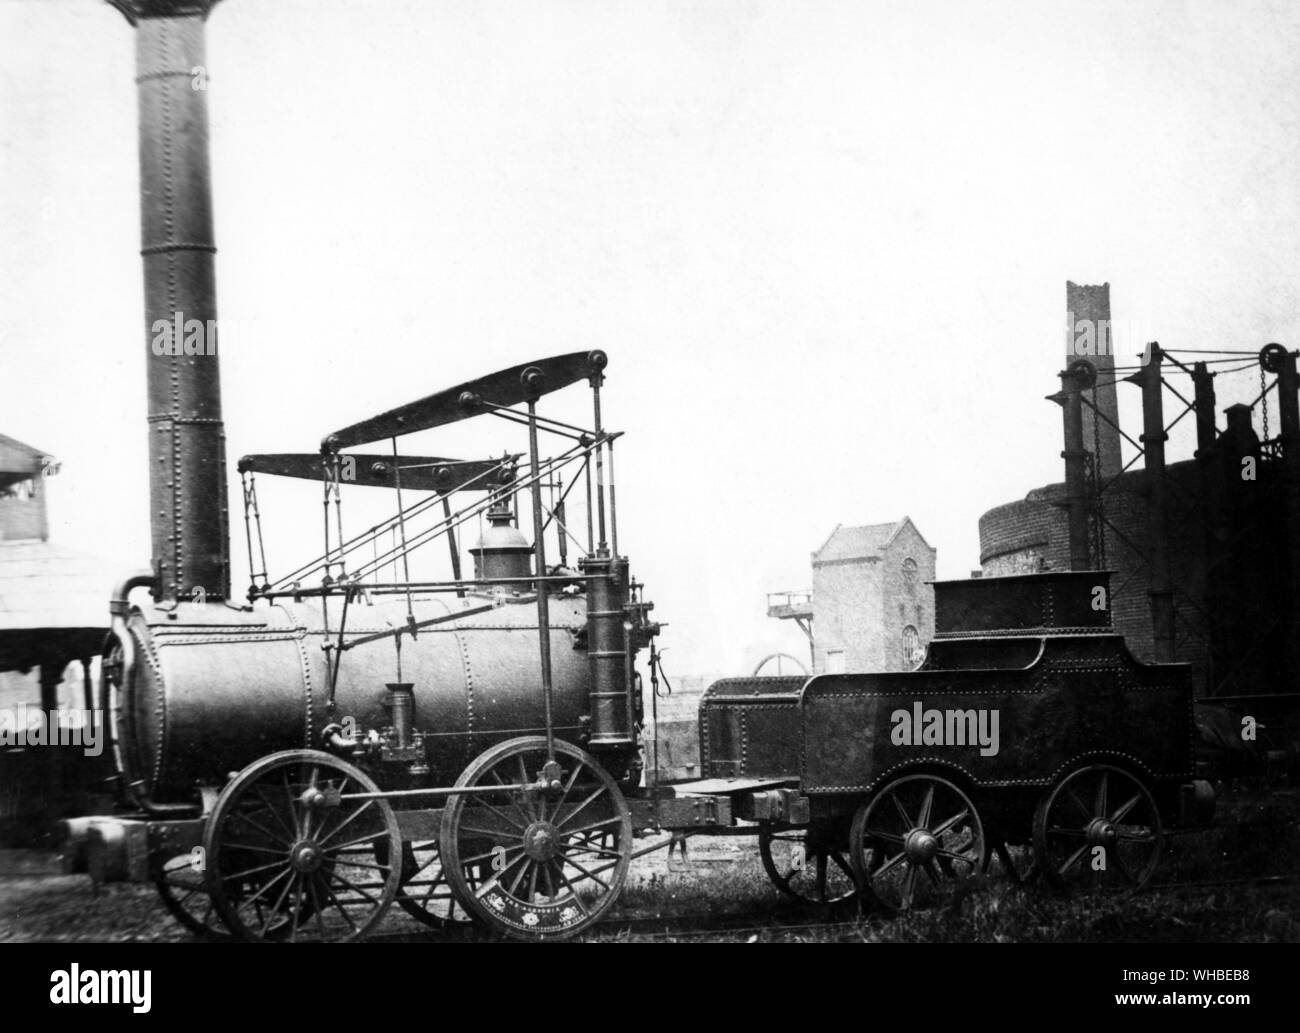 La Agenoria c.1880s fue construido para los Shutt final del tren. Agenoria fue probablemente el primero en utilizar la lubricación mecánica de sus ejes. Tuvo una vida larga y, al final, fue presentado en el Museo de la Ciencia (Londres) en 1884. Ahora está en el Museo Nacional de Ferrocarriles en York. Foto de stock